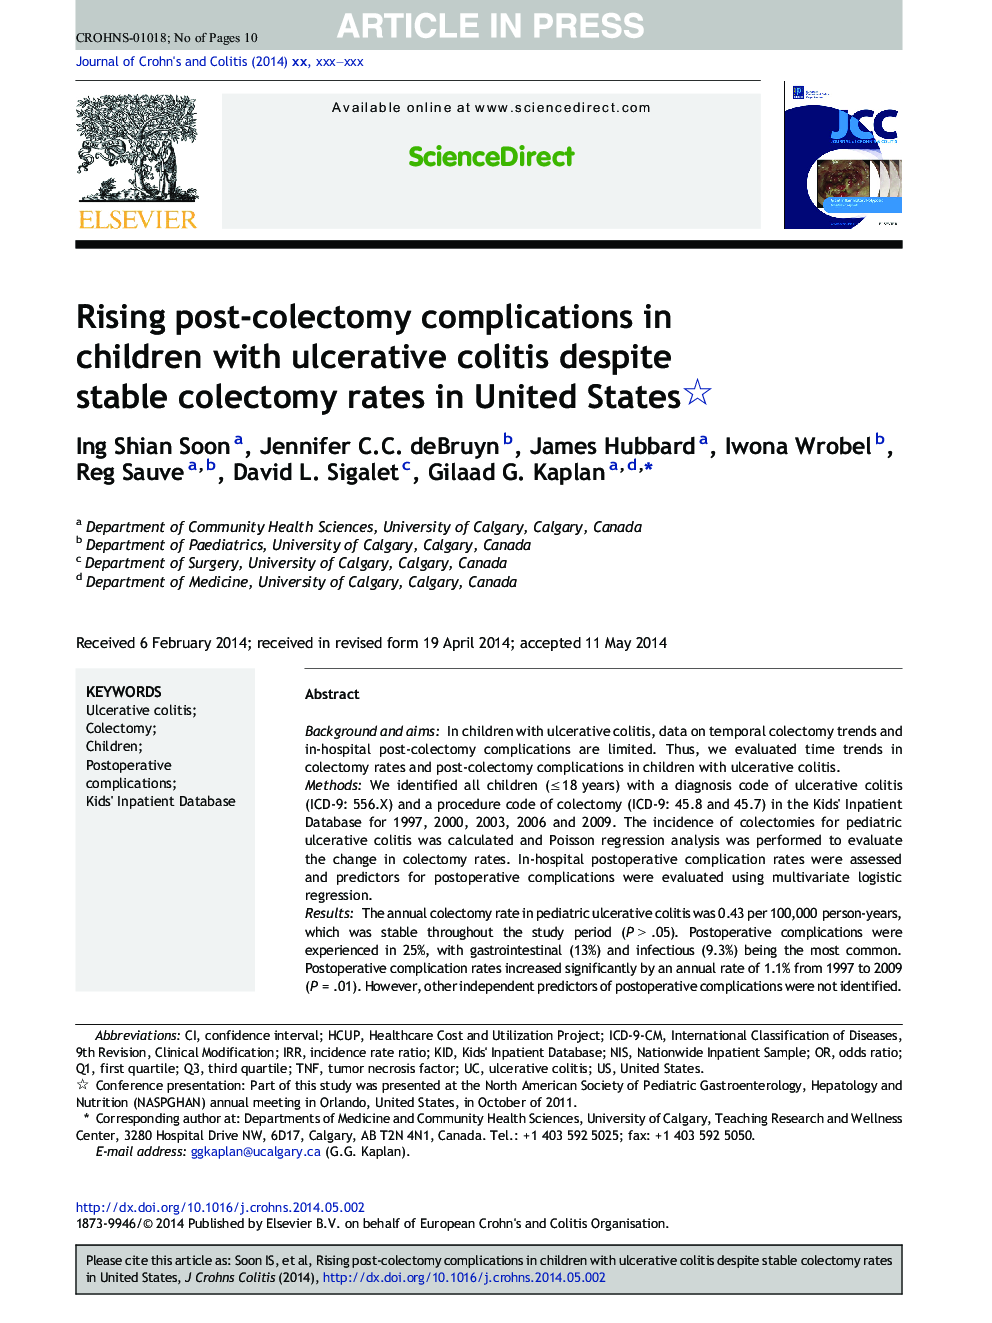 افزایش عوارض بعد از کوئکتومی در کودکان مبتلا به کولیت زخمی با وجود میزان هموگلوبین پایدار در ایالات متحده 